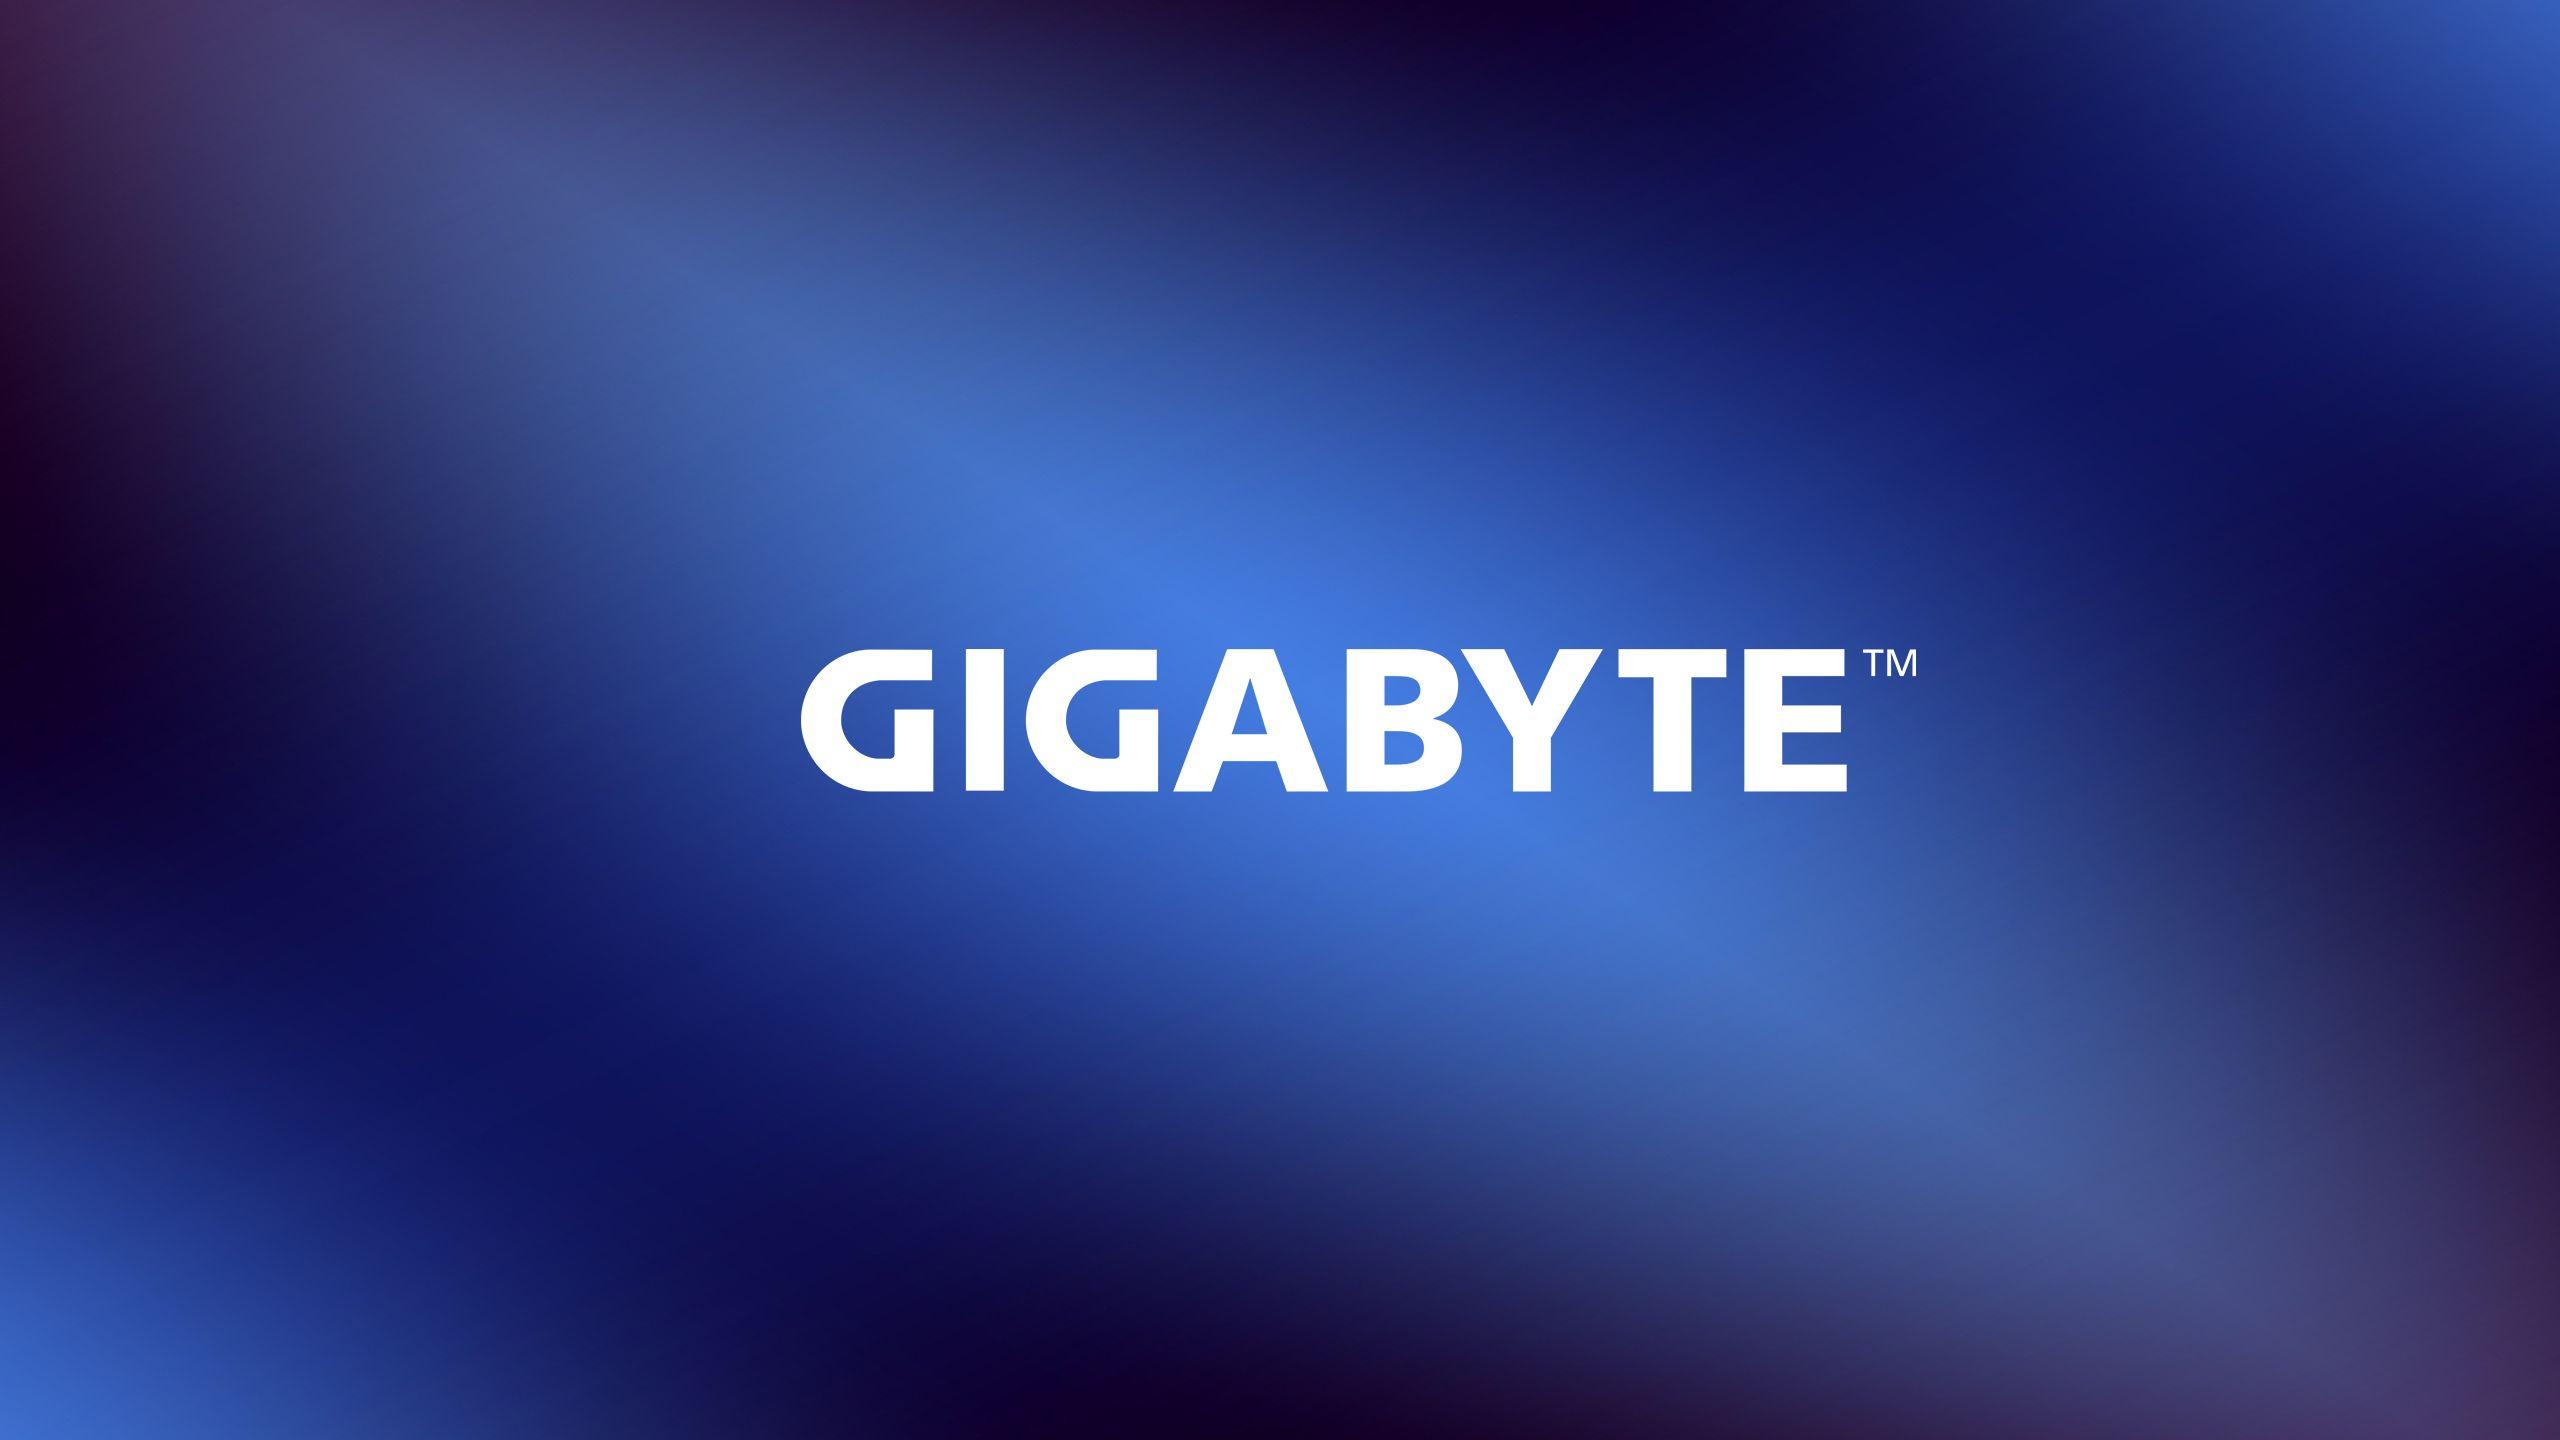 Gigabyte Logo - LogoDix